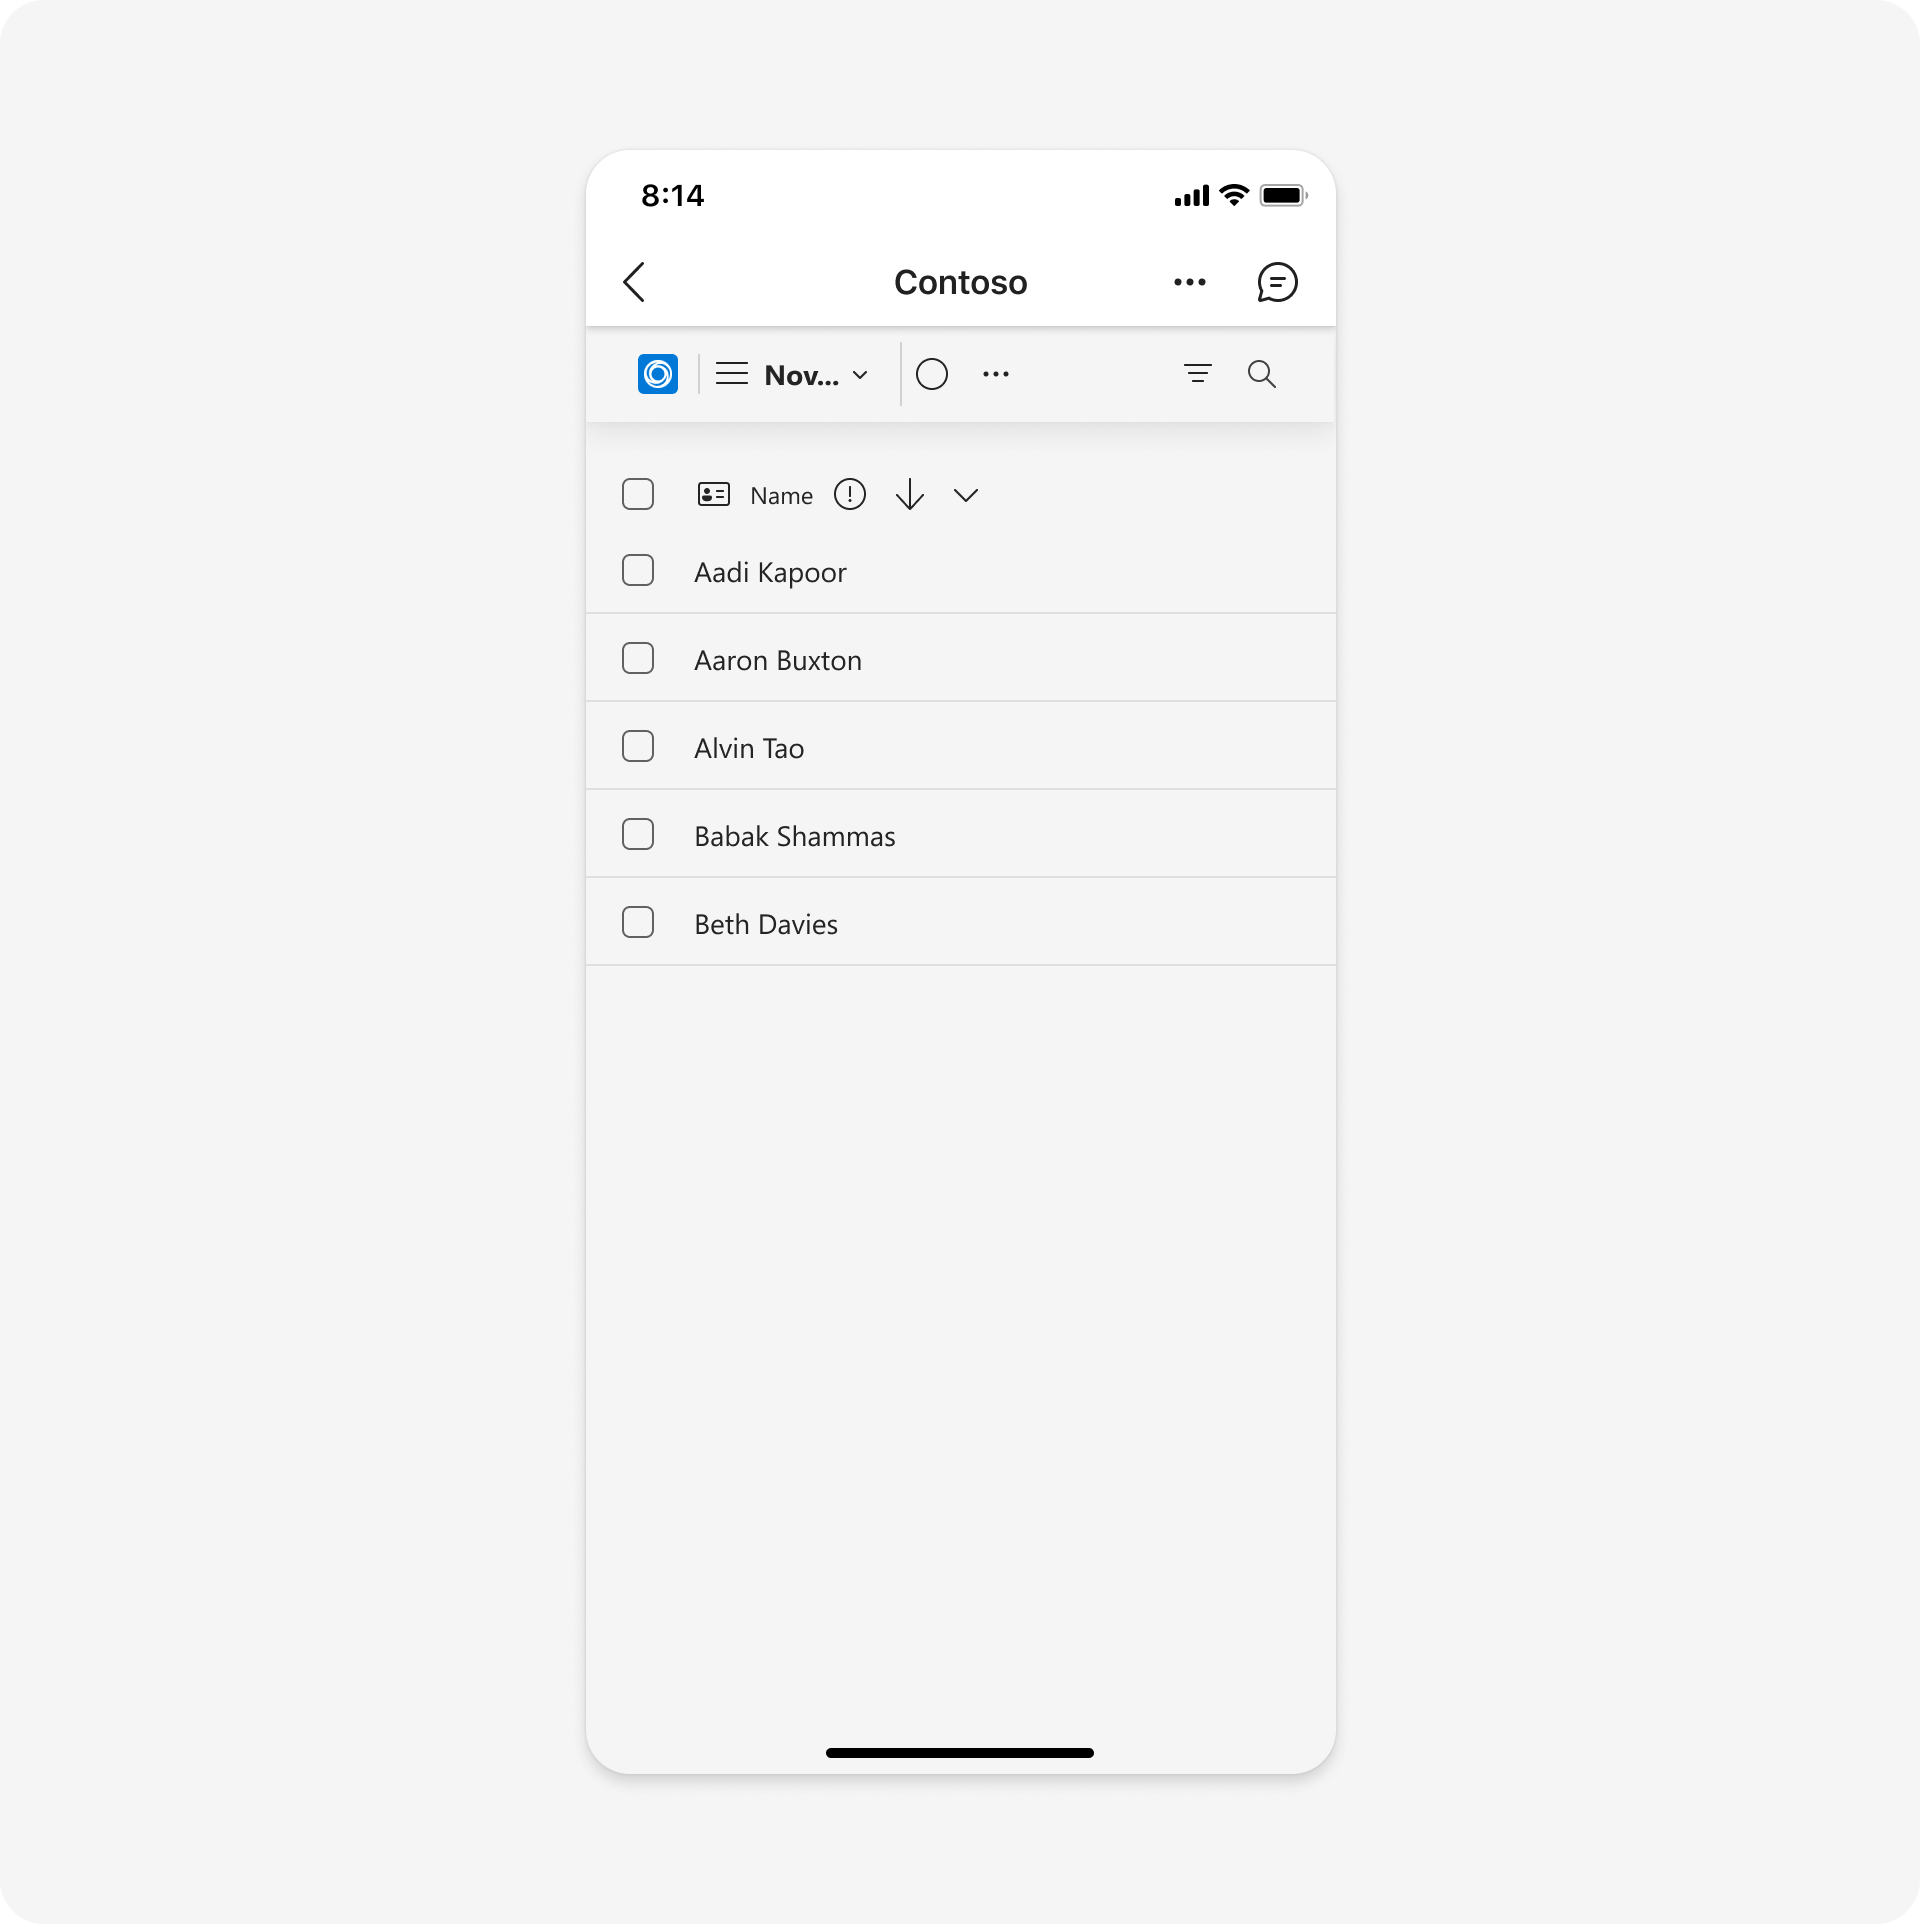 En el ejemplo se muestra una plantilla de interfaz de usuario de lista en dispositivos móviles.